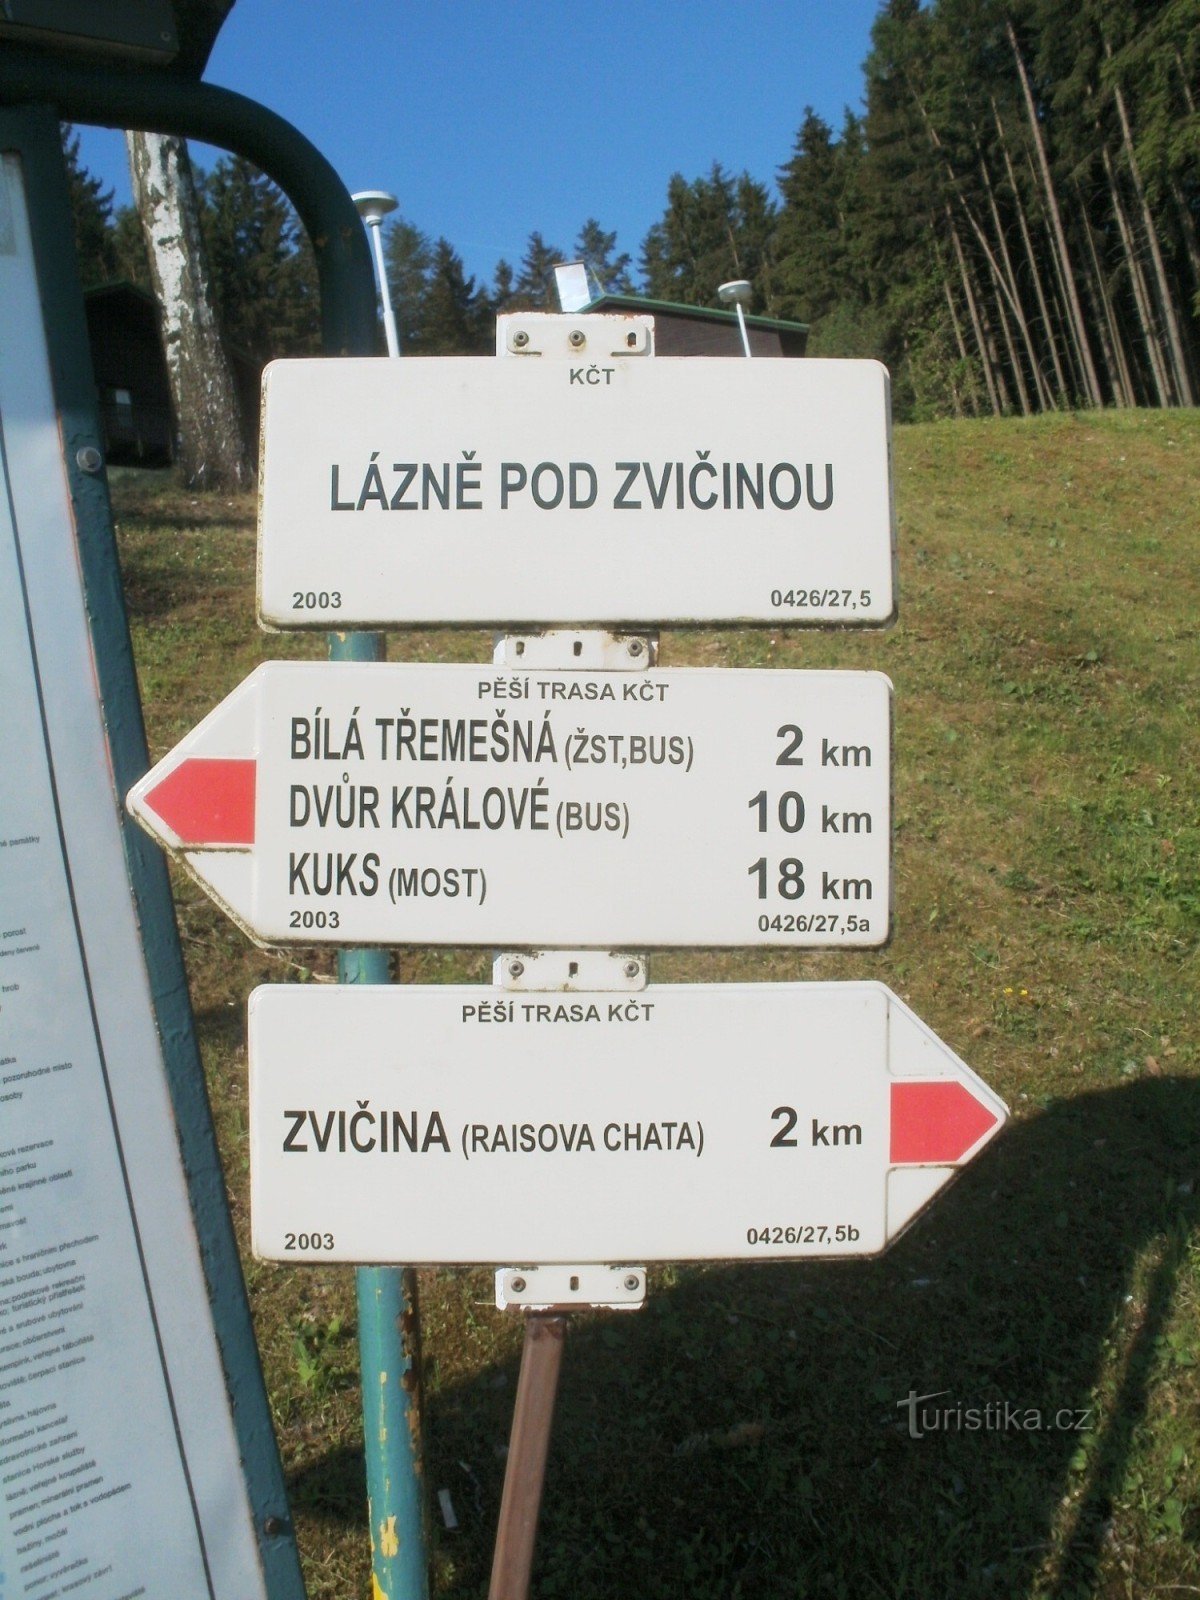 το τουριστικό σταυροδρόμι του Lázně pod Zvičinou